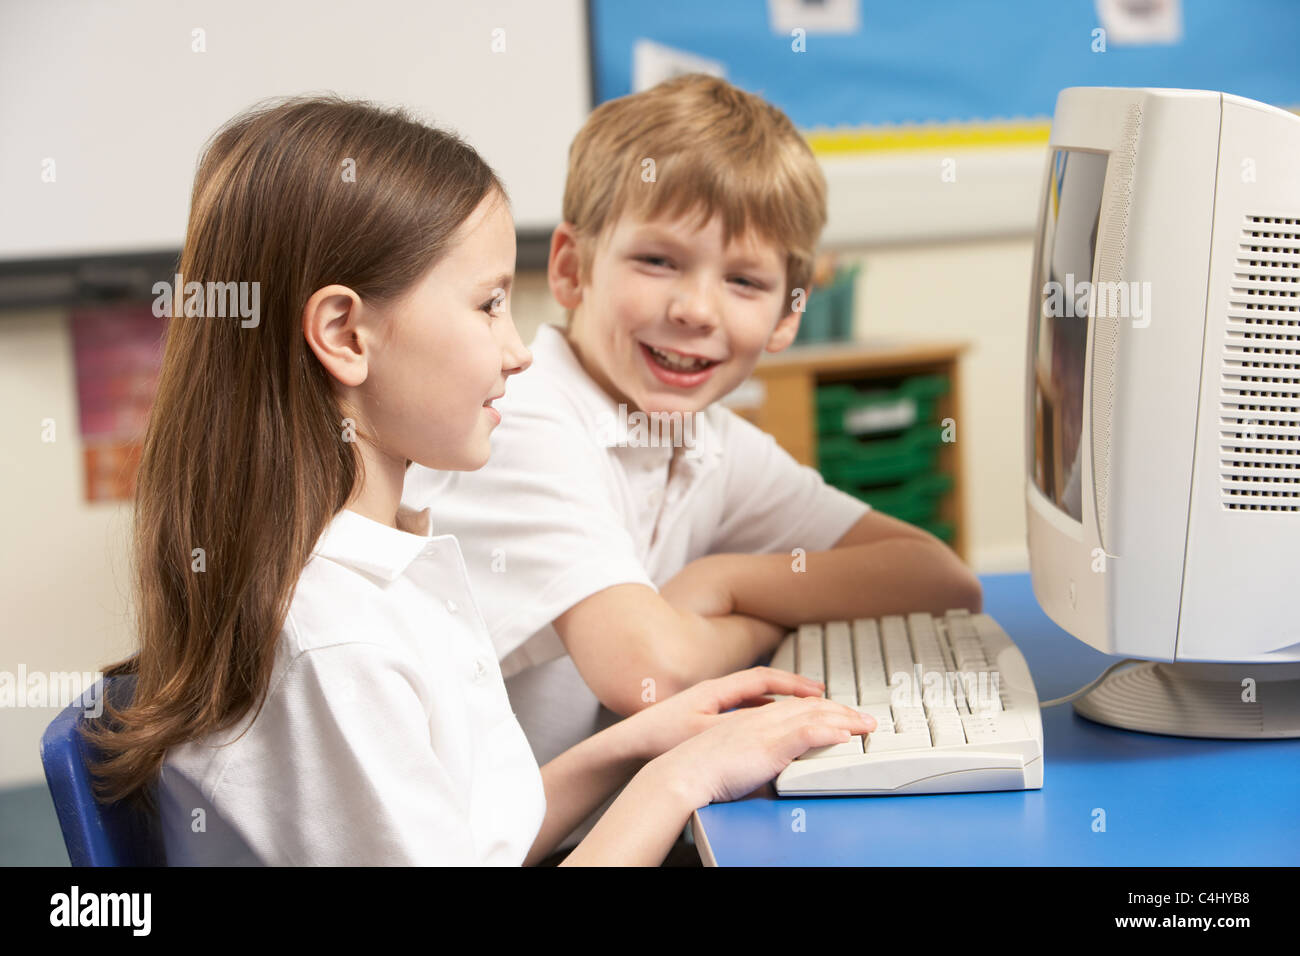 Schulkinder In es Klasse mit Computer Stockfoto